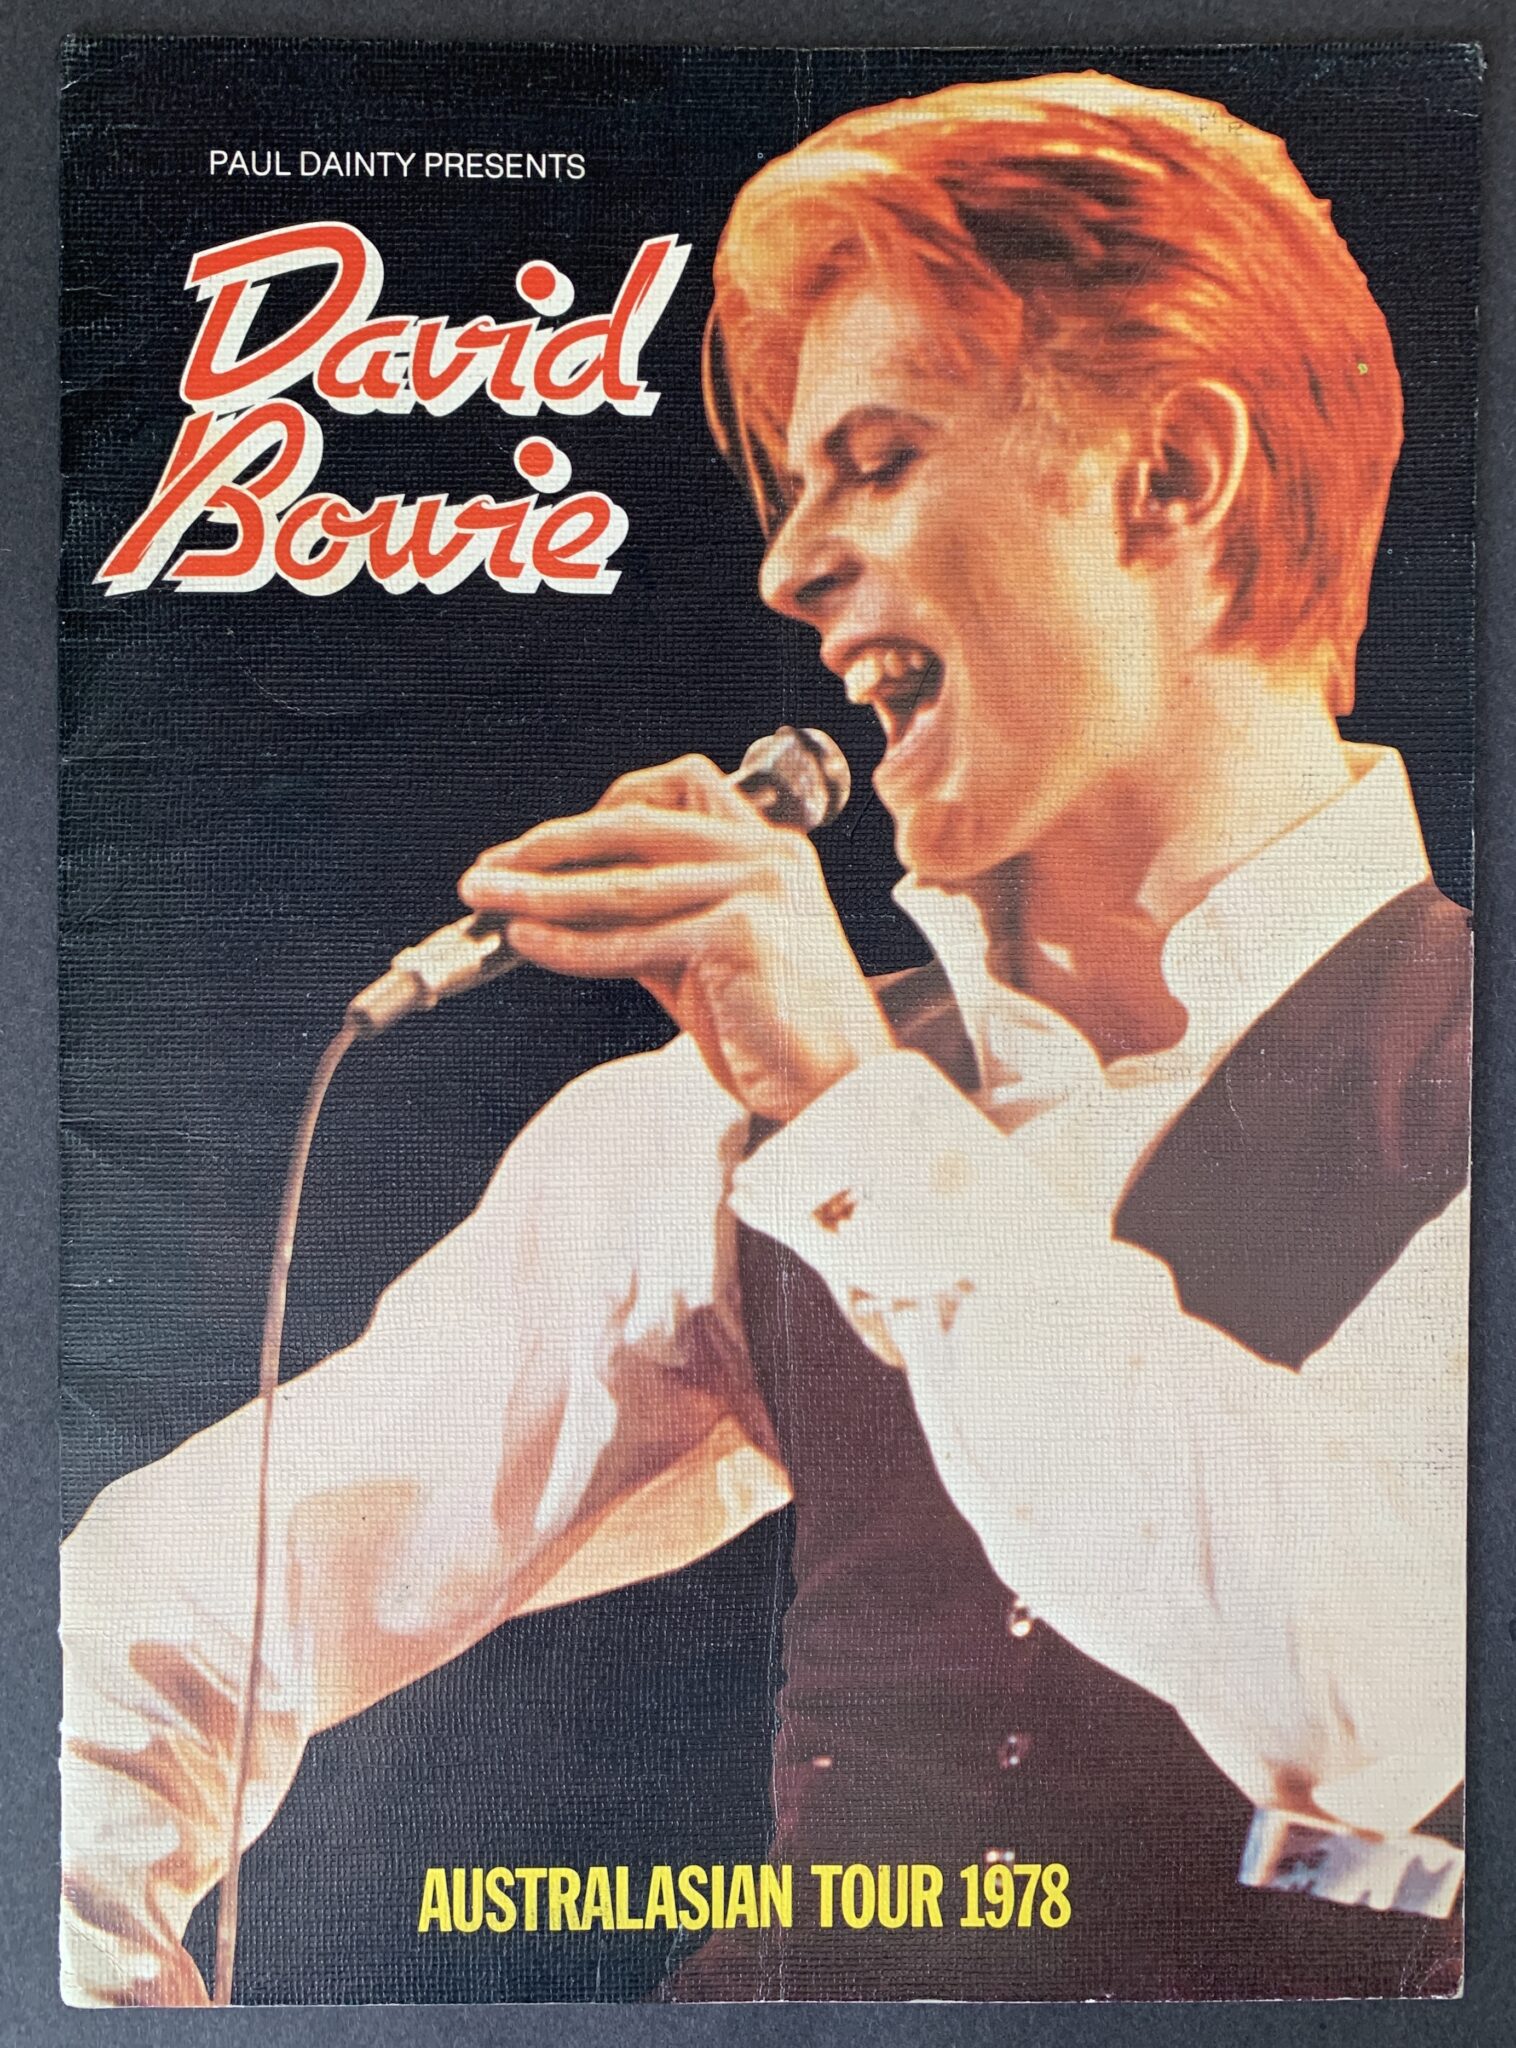 david bowie isolar tour 1978